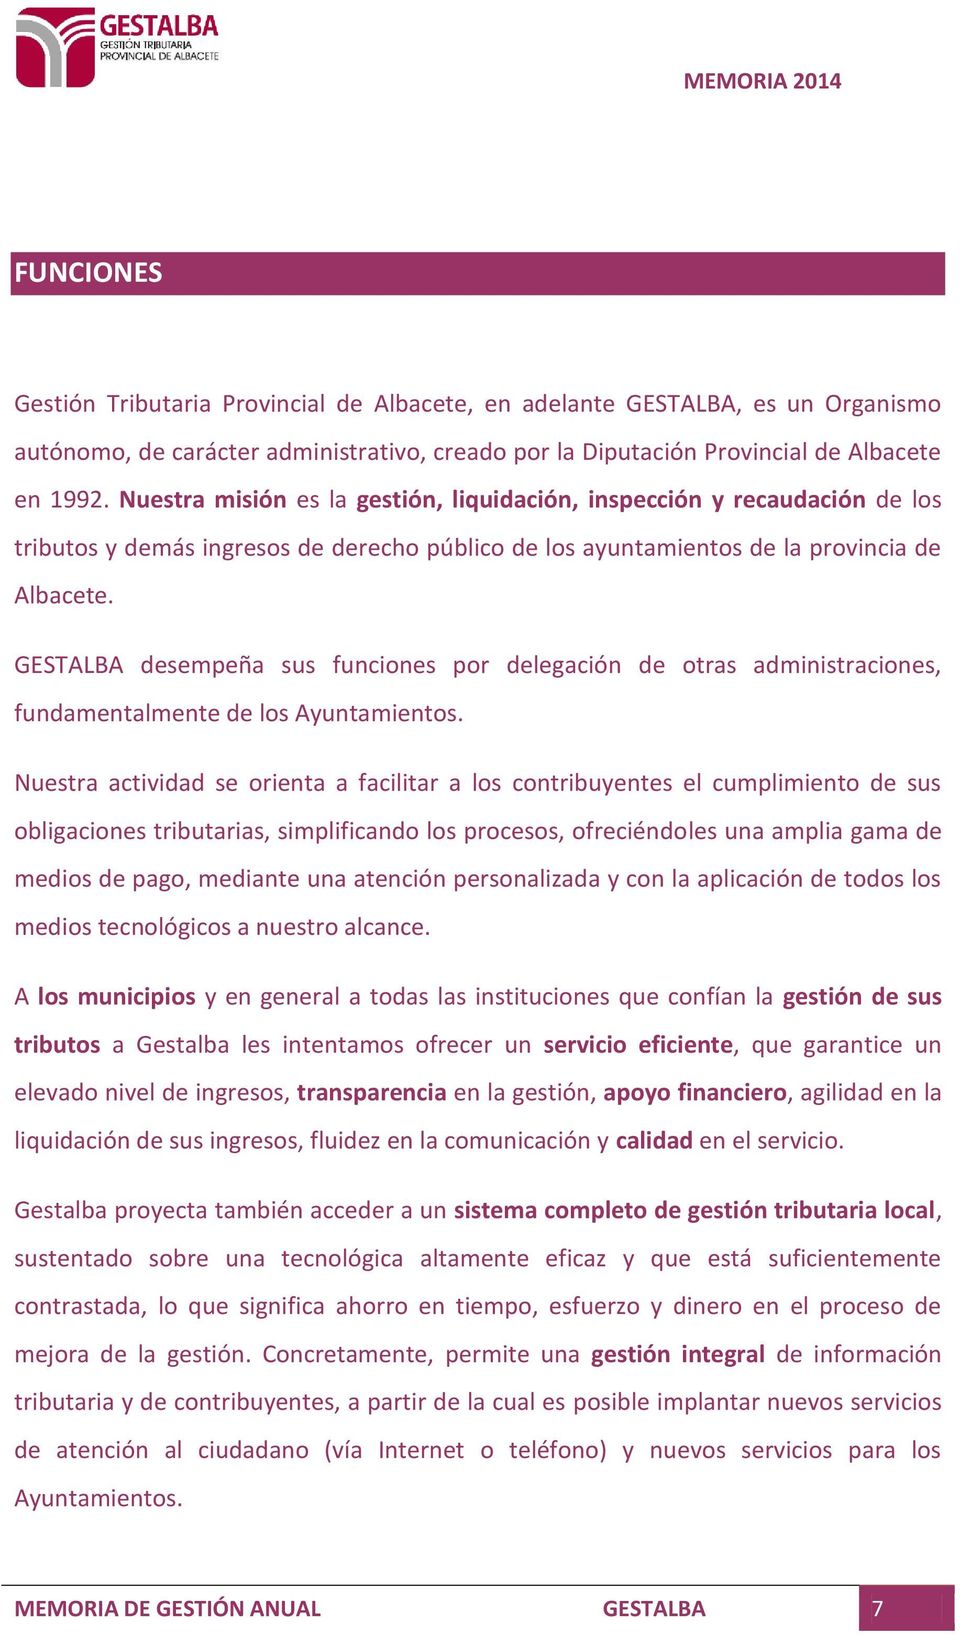 GESTALBA desempeña sus funciones por delegación de otras administraciones, fundamentalmente de los Ayuntamientos.